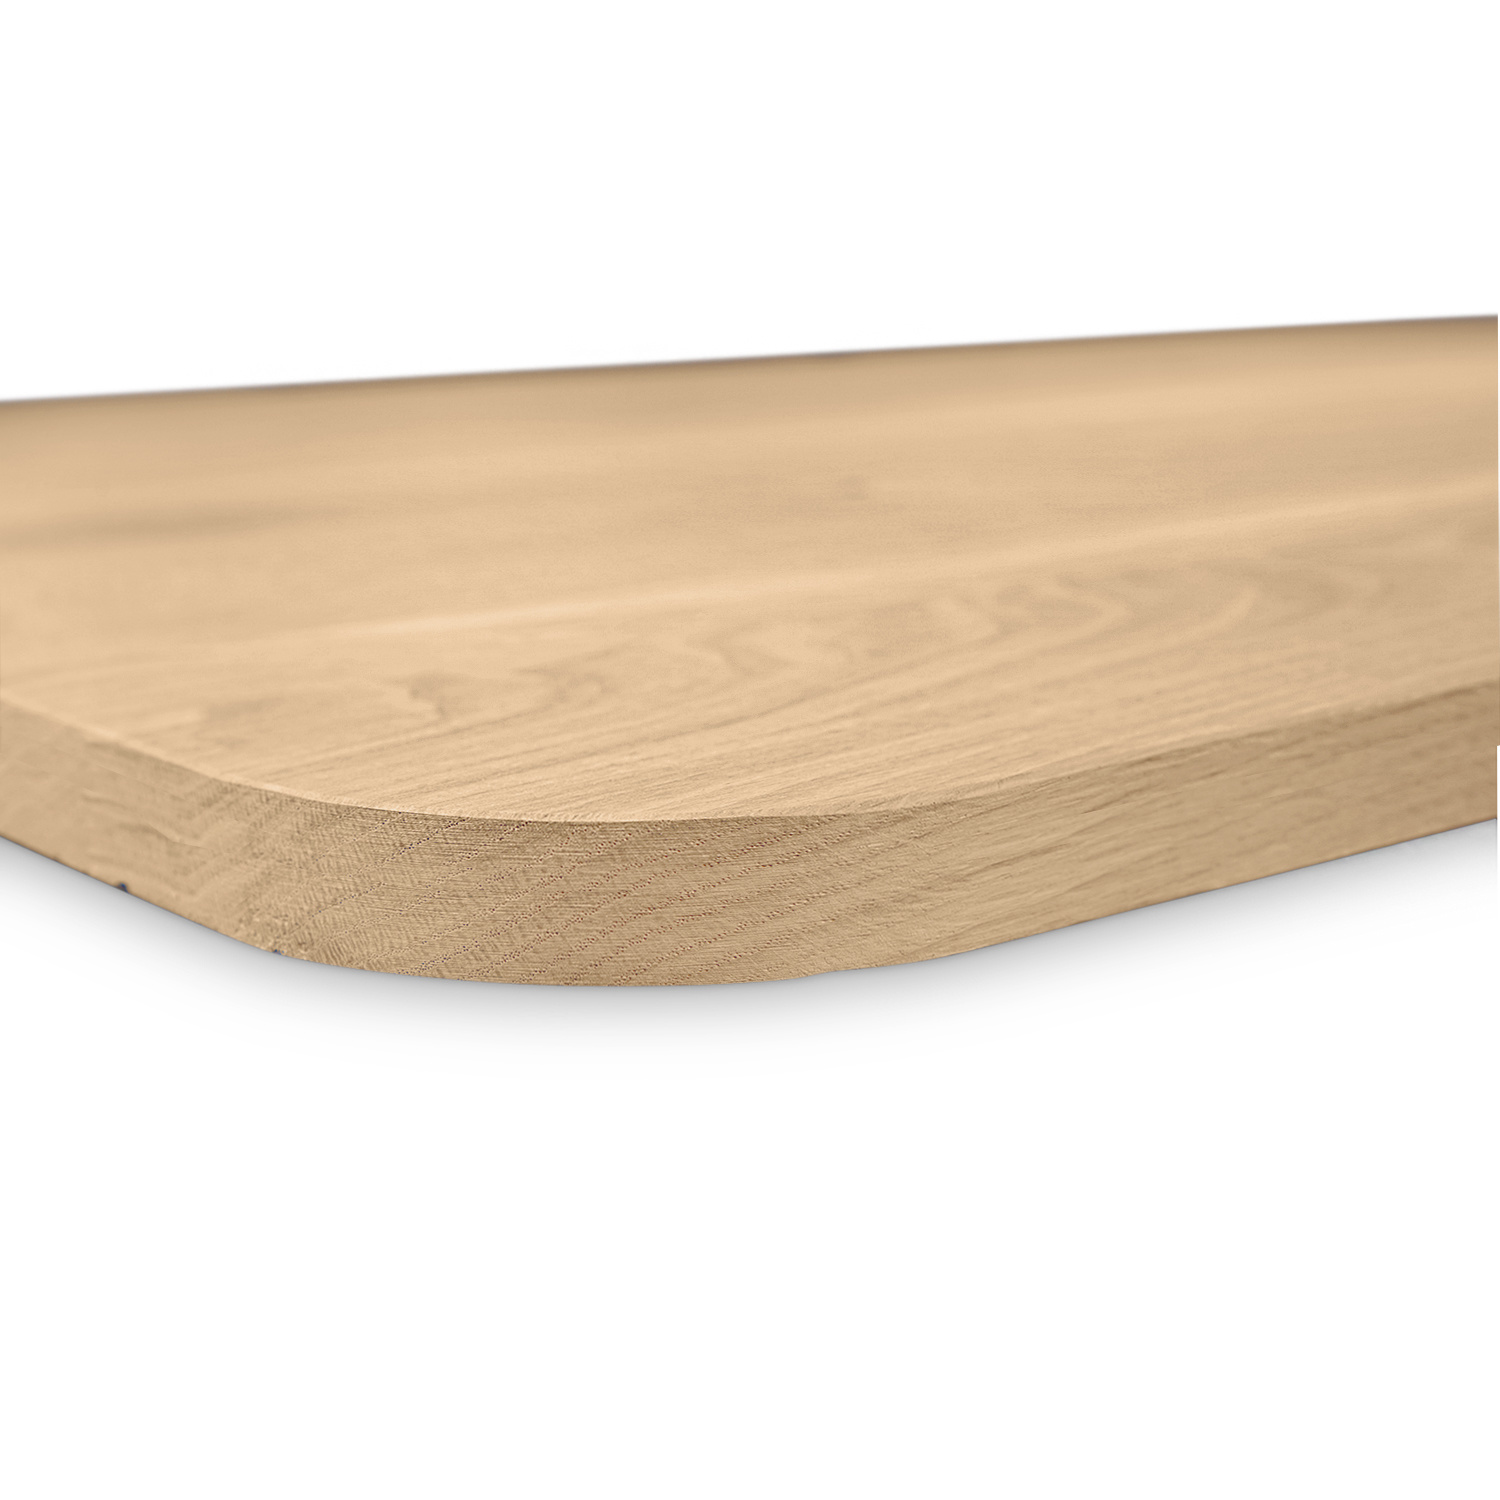  Eiken tafelblad met ronde hoeken - 2,7 cm dik (1-laag) - Diverse afmetingen - rustiek Europees eikenhout - met brede lamellen (circa 10-12 cm) - verlijmd kd 8-12%